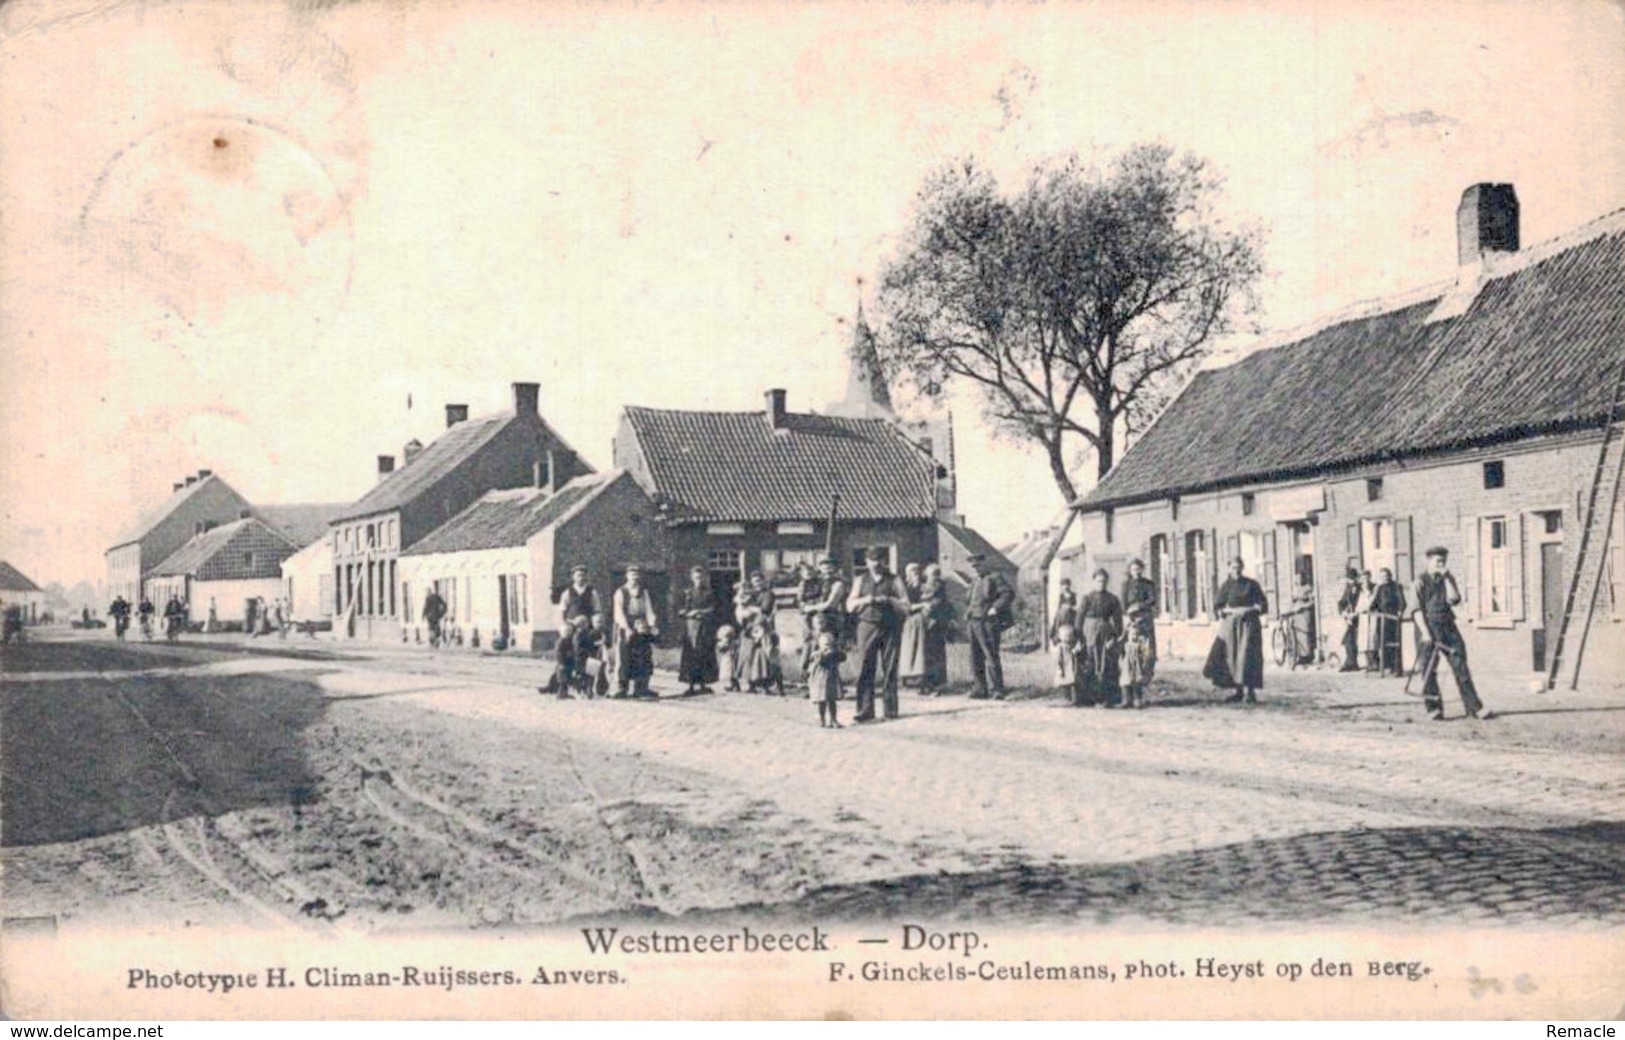 Westmeerbeeck Dorp - Hulshout